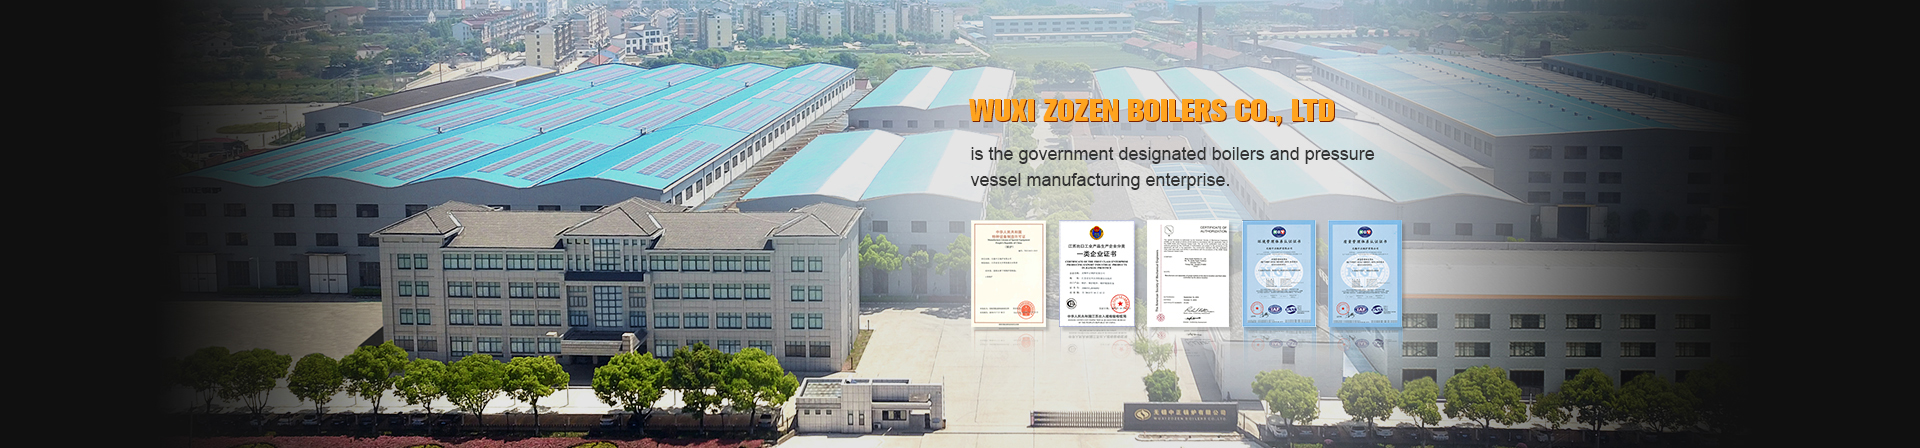 Wuxi Zozen Boilers Co., Ltd.